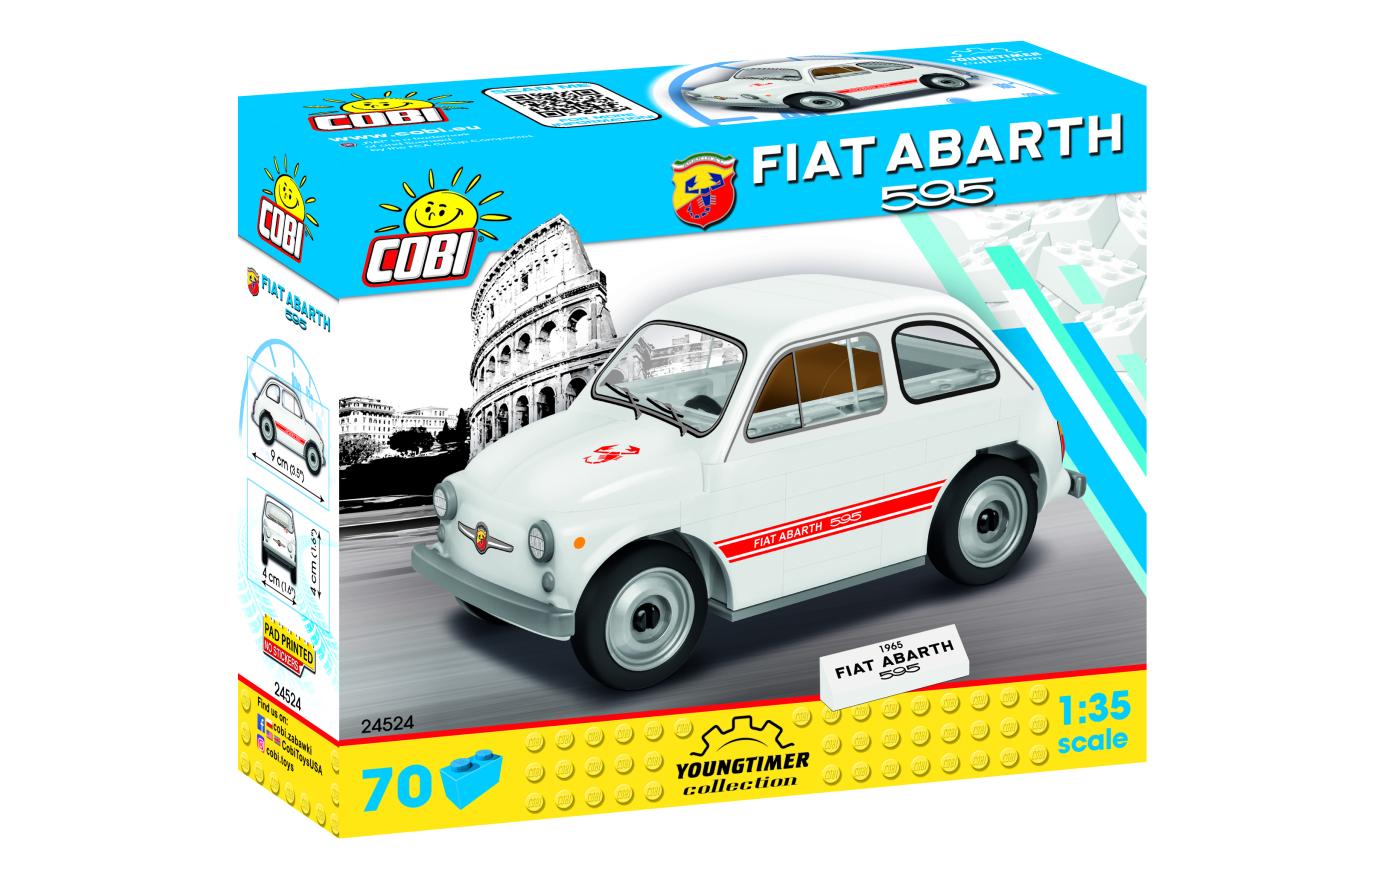 COBI Bausteinmodell Fiat Abarth 595 - im GOLDSTIEN.SHOP verfügbar mit Gratisversand ab Schweizer Lager! (5902251245245)